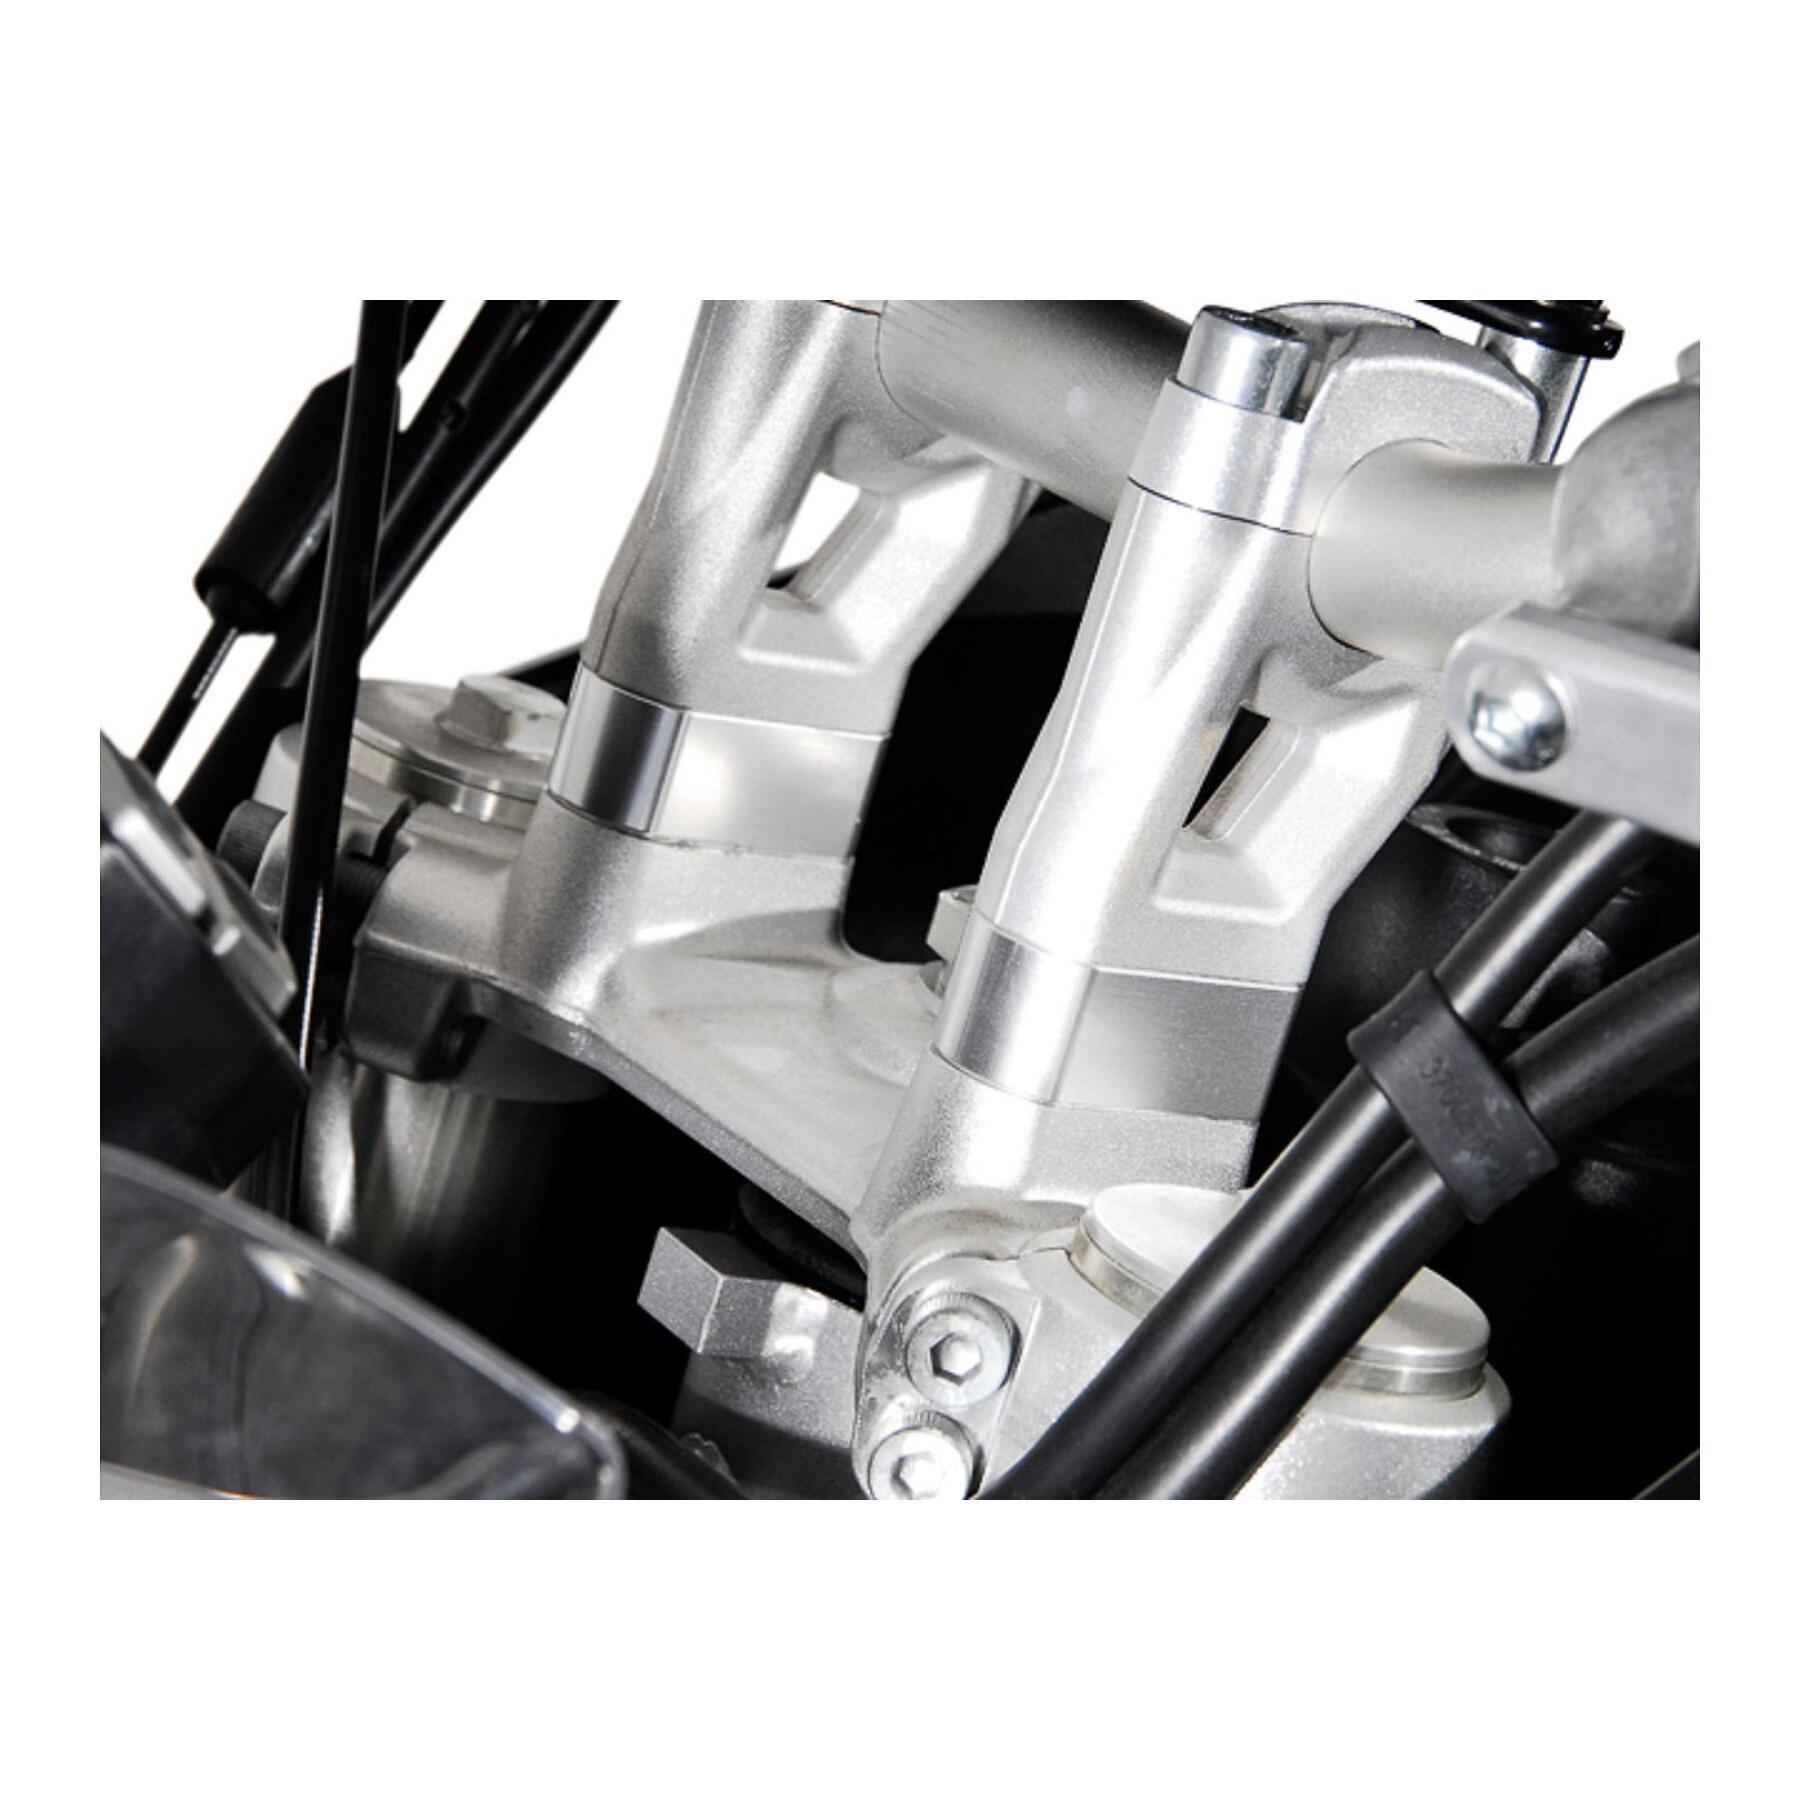 Extensões do guiador da motocicleta h20 mm.modelos triumph tiger 800 / 1200 SW-Motech